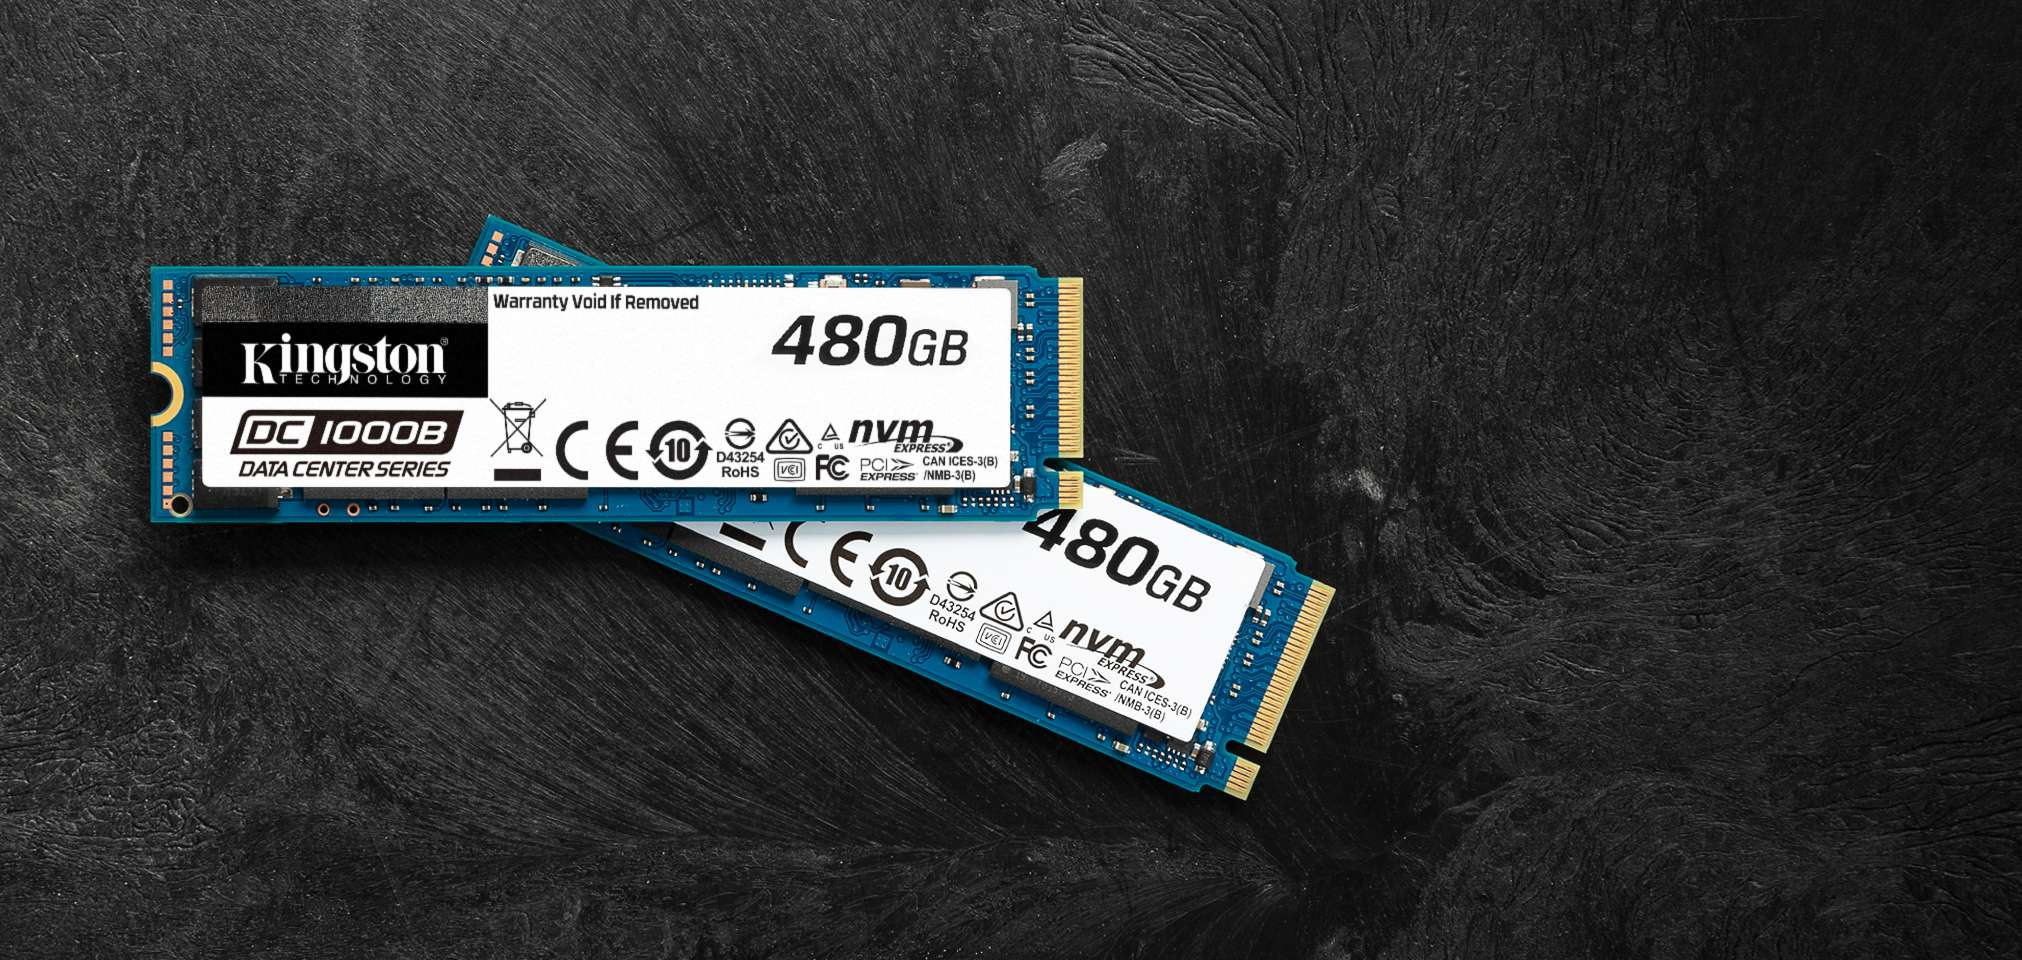 SSD Kingston Technology DC1000B M.2 480 GB PCI Express 3.0 3D TLC NAND NVMe [SEDC1000BM8/480G]